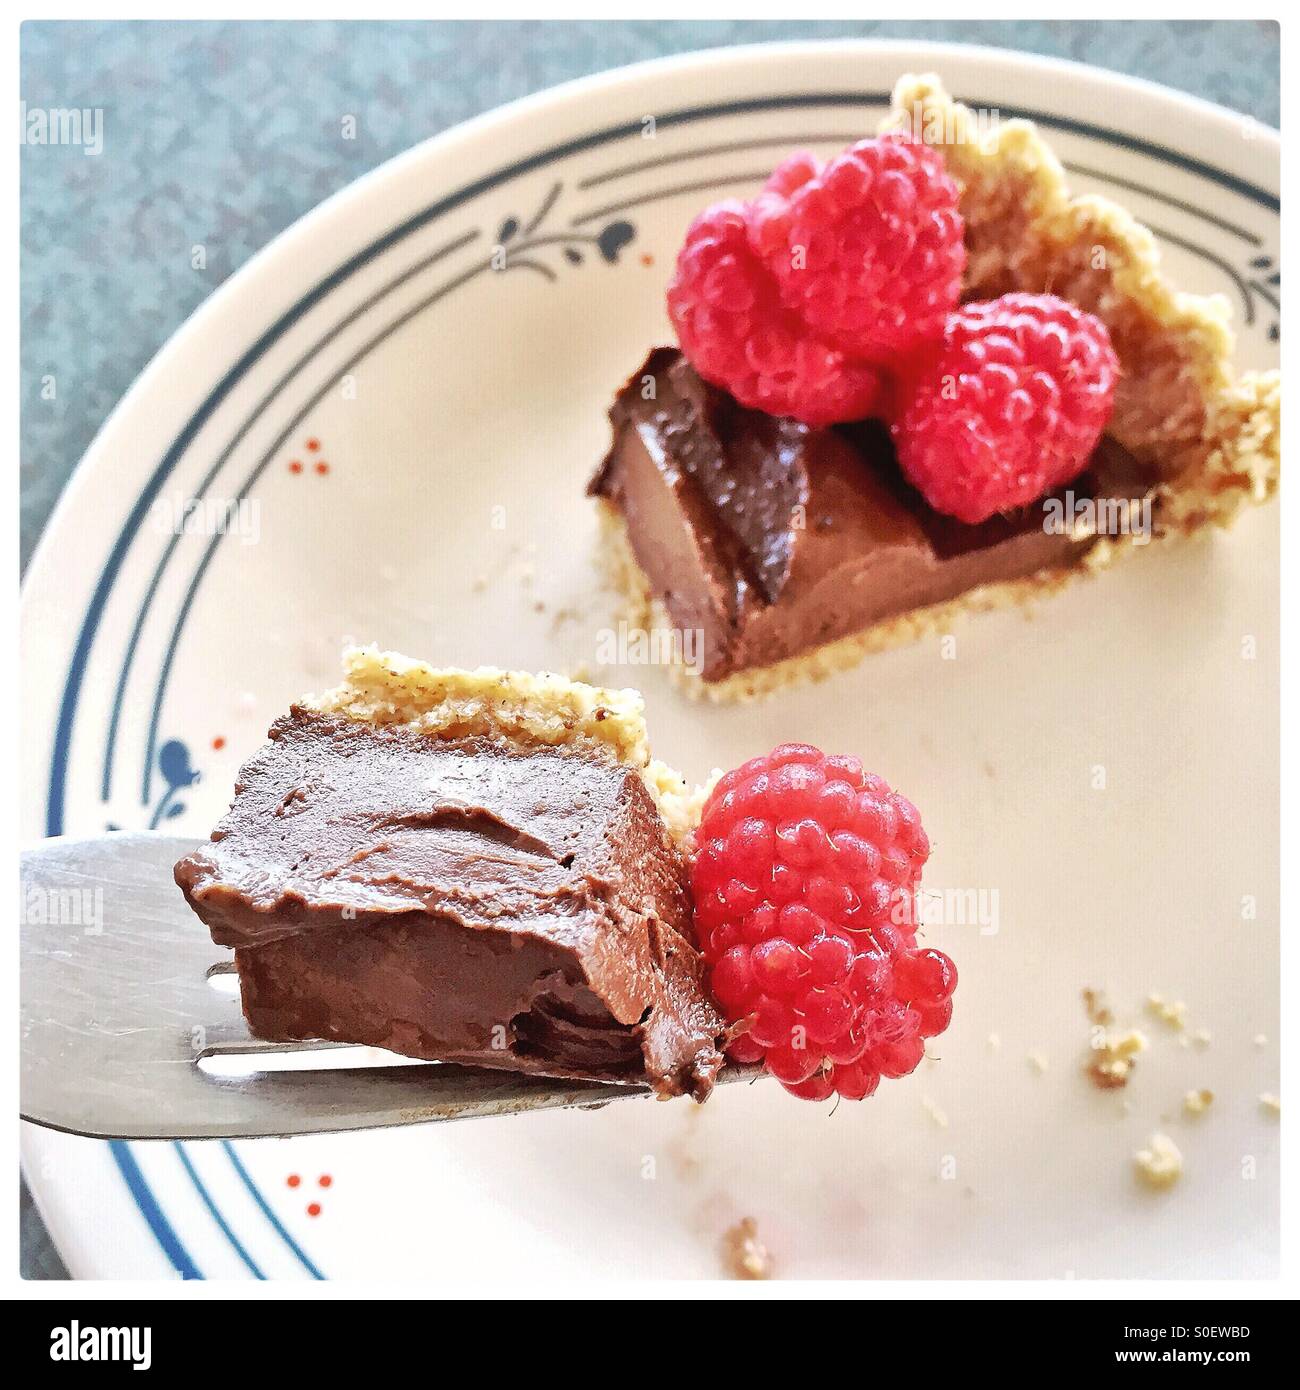 Une lanière de Torte au chocolat garnie de framboises est en arrière-plan avec une morsure sur une fourche à l'avant-plan. Banque D'Images